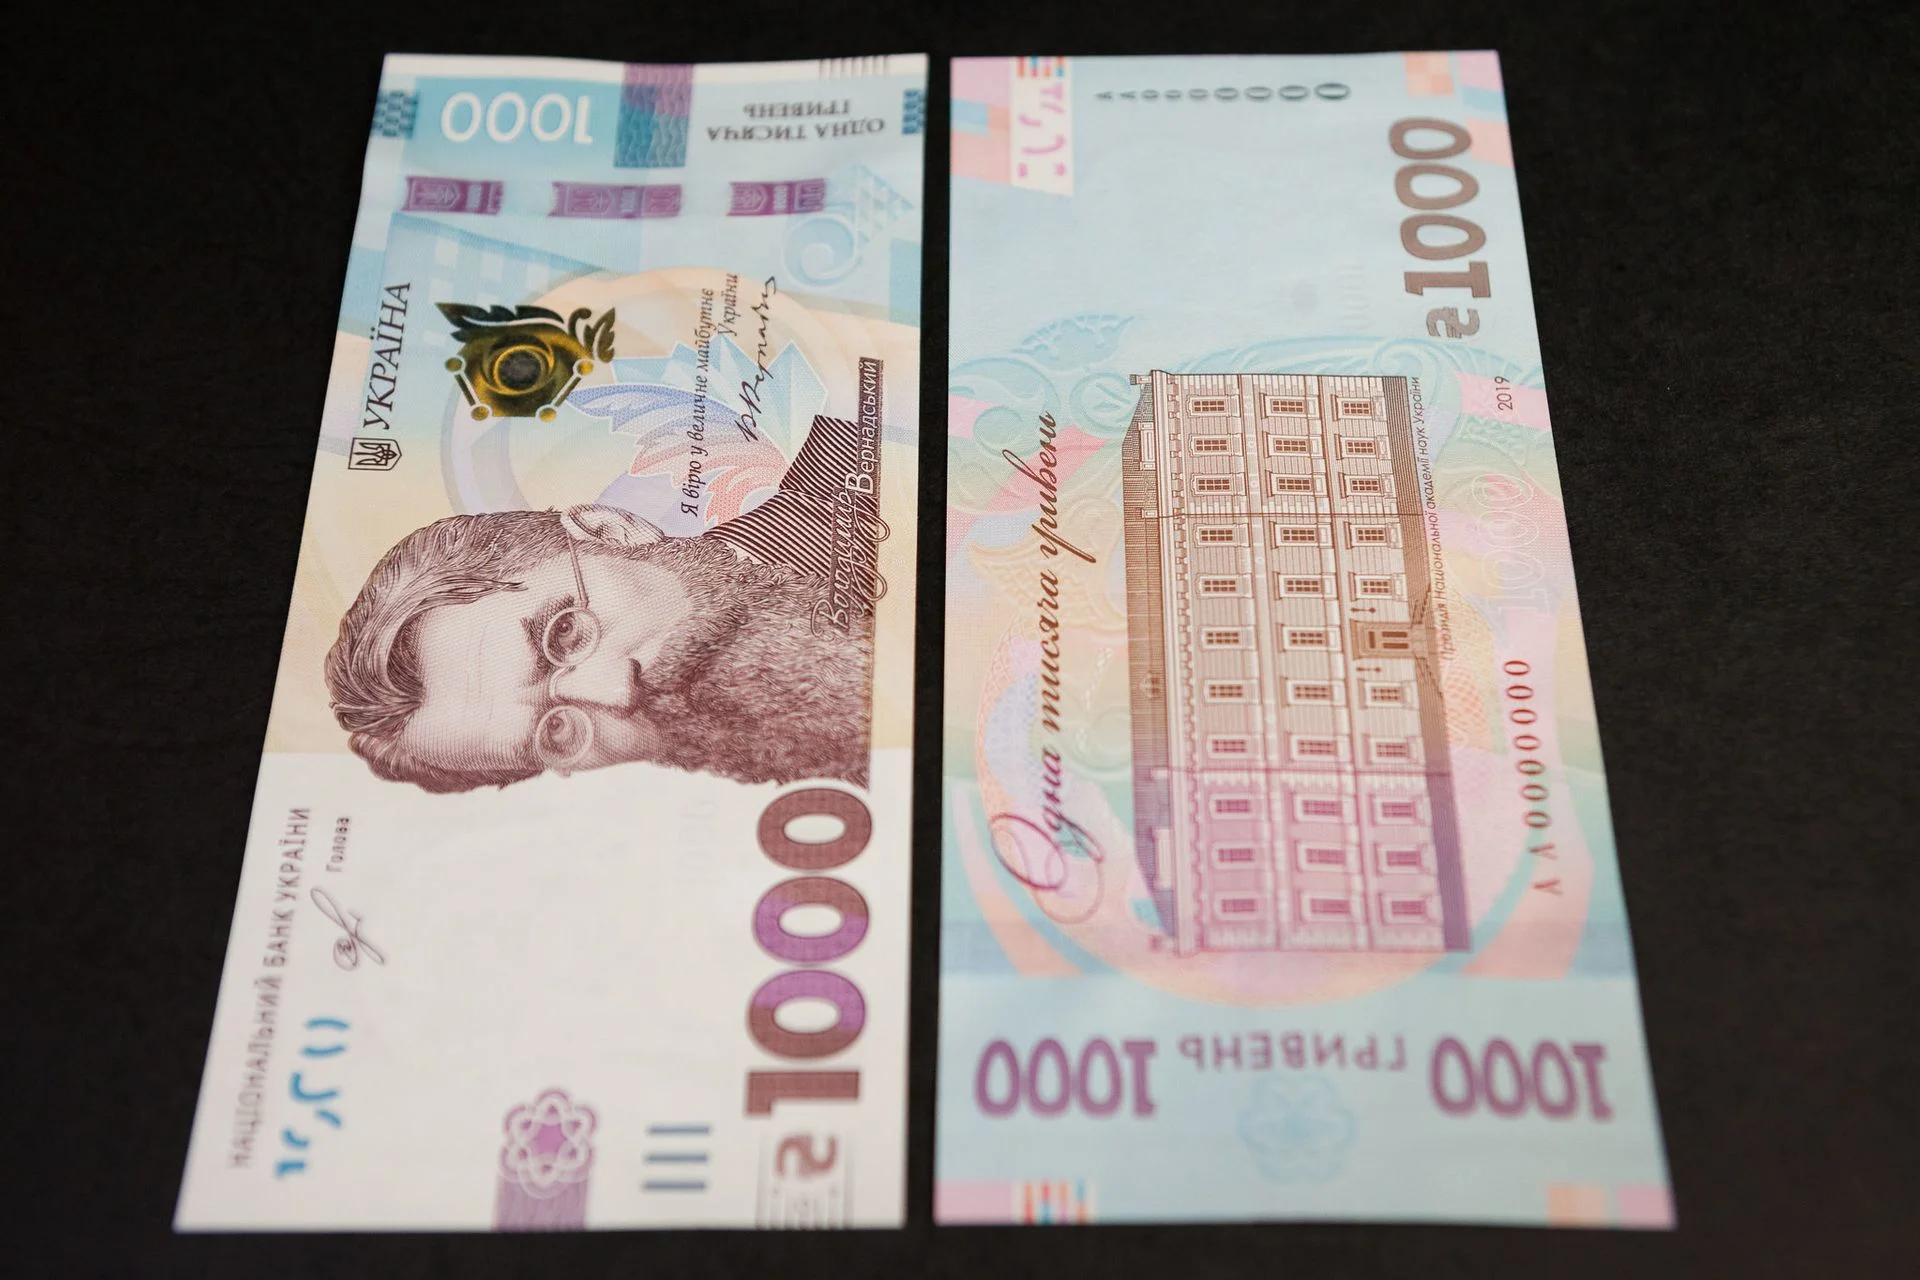 В Украине скоро появится купюра в 1000 гривен - вот какой дизайн придумали для нее - фото 439324